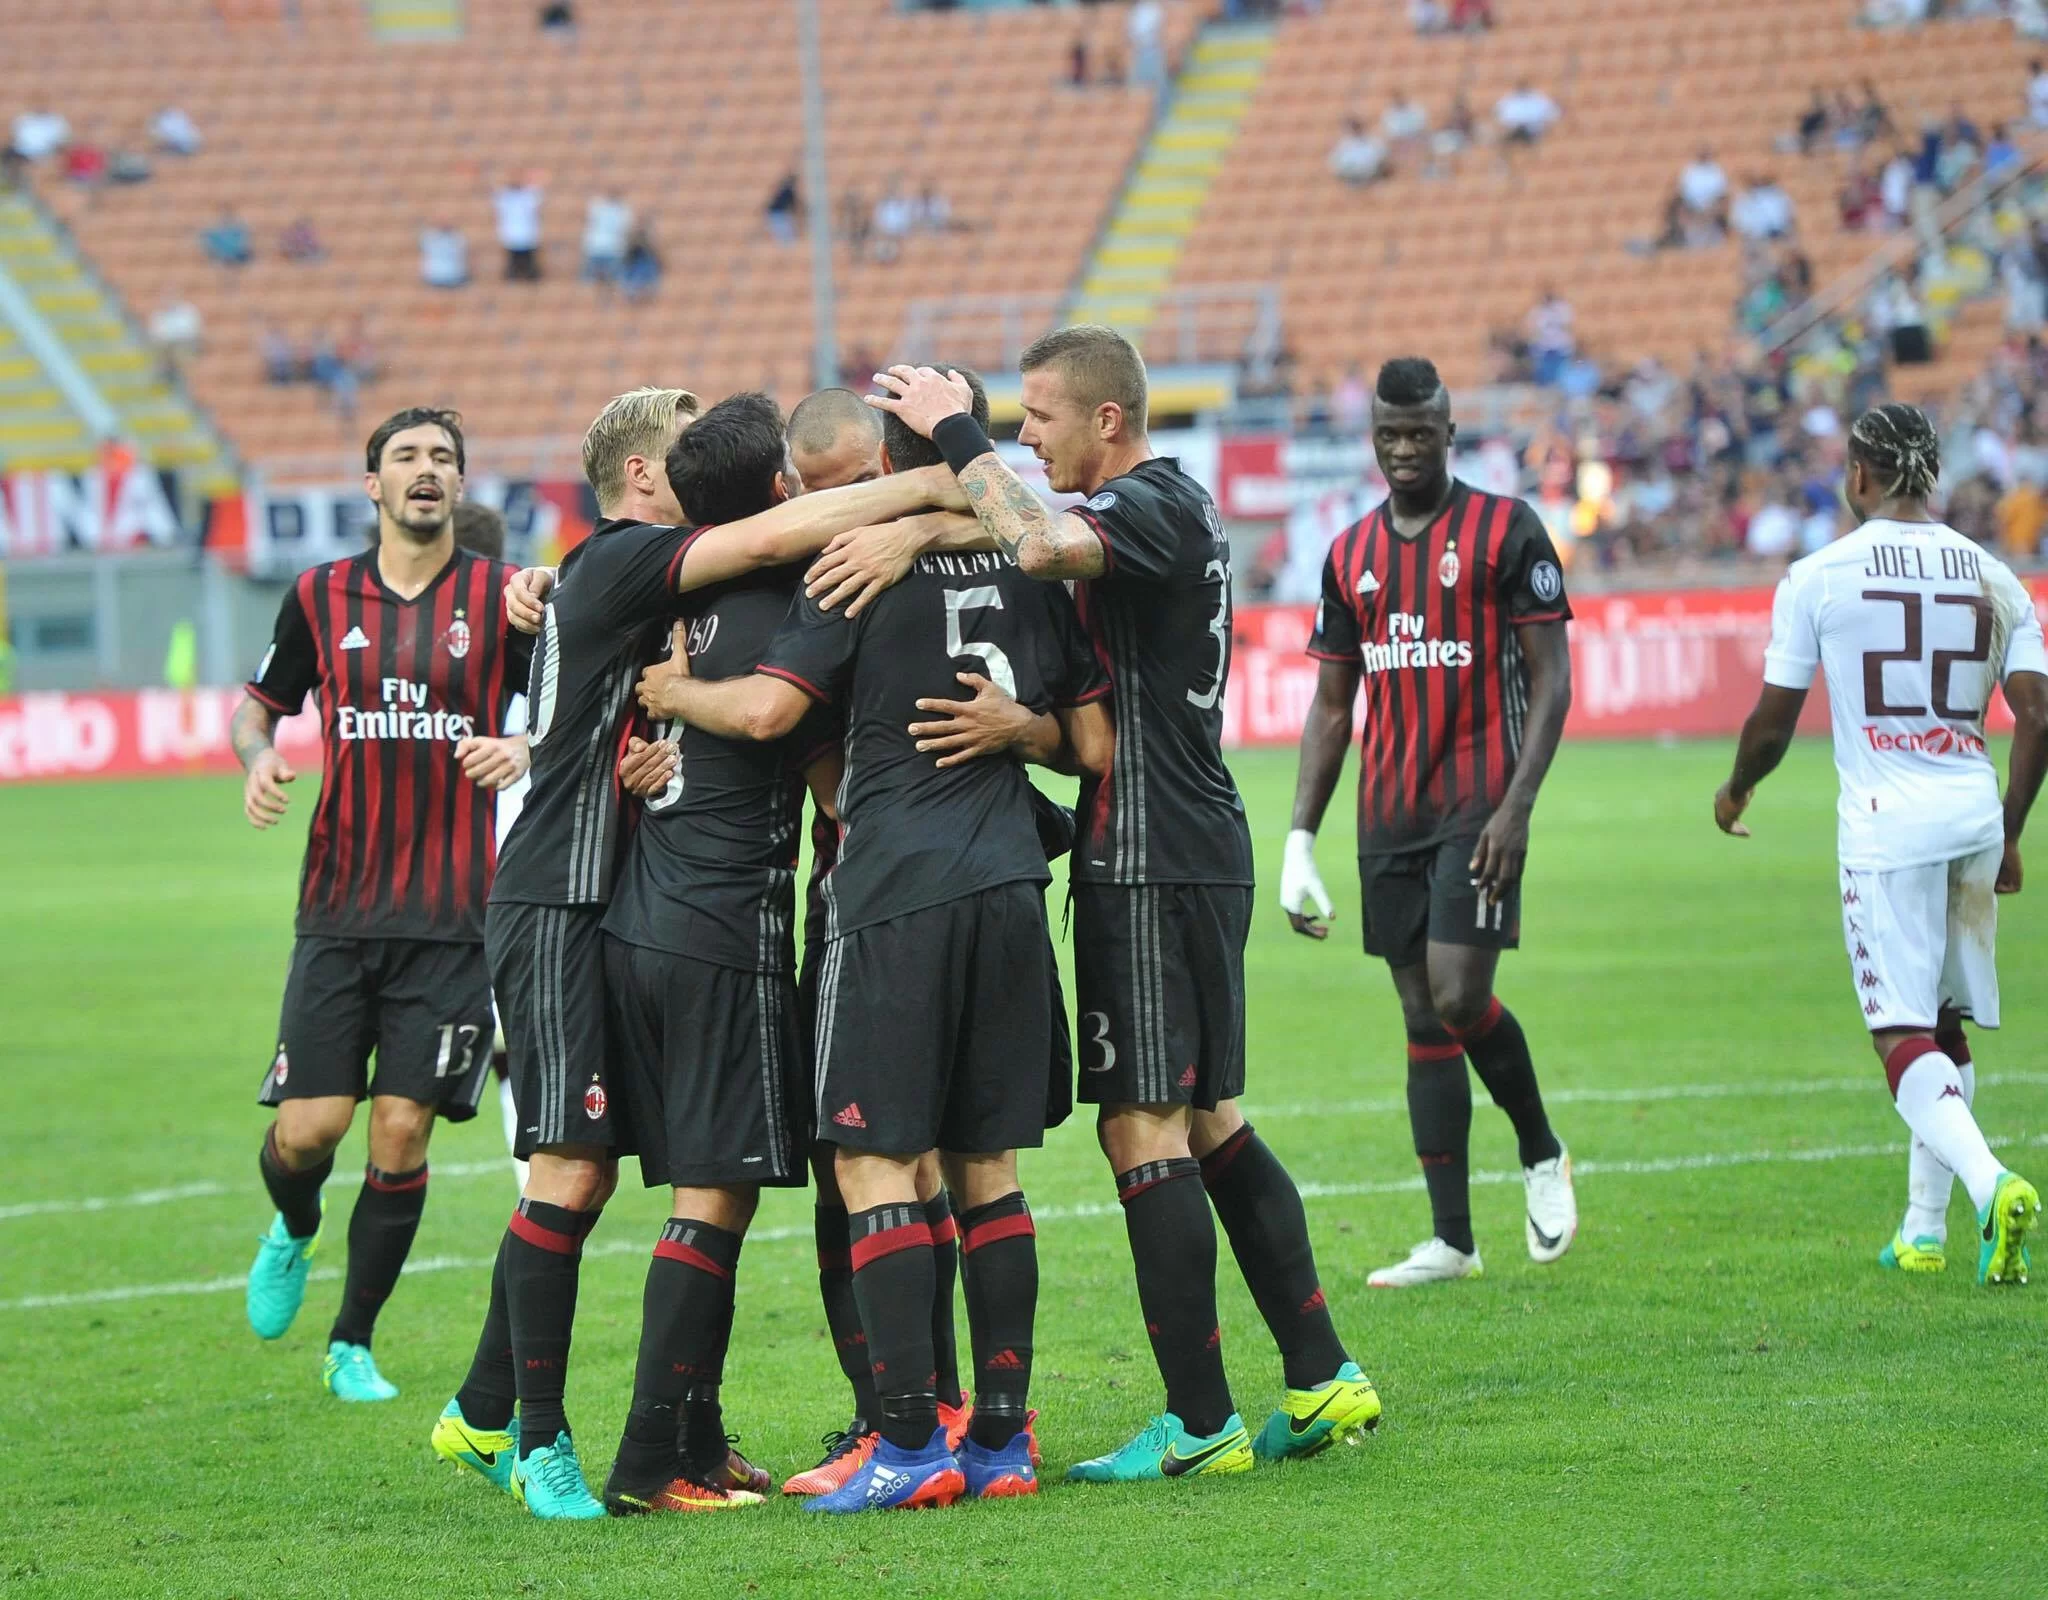 Serie A, anticipi e posticipi del Milan fino alla 18esima giornata